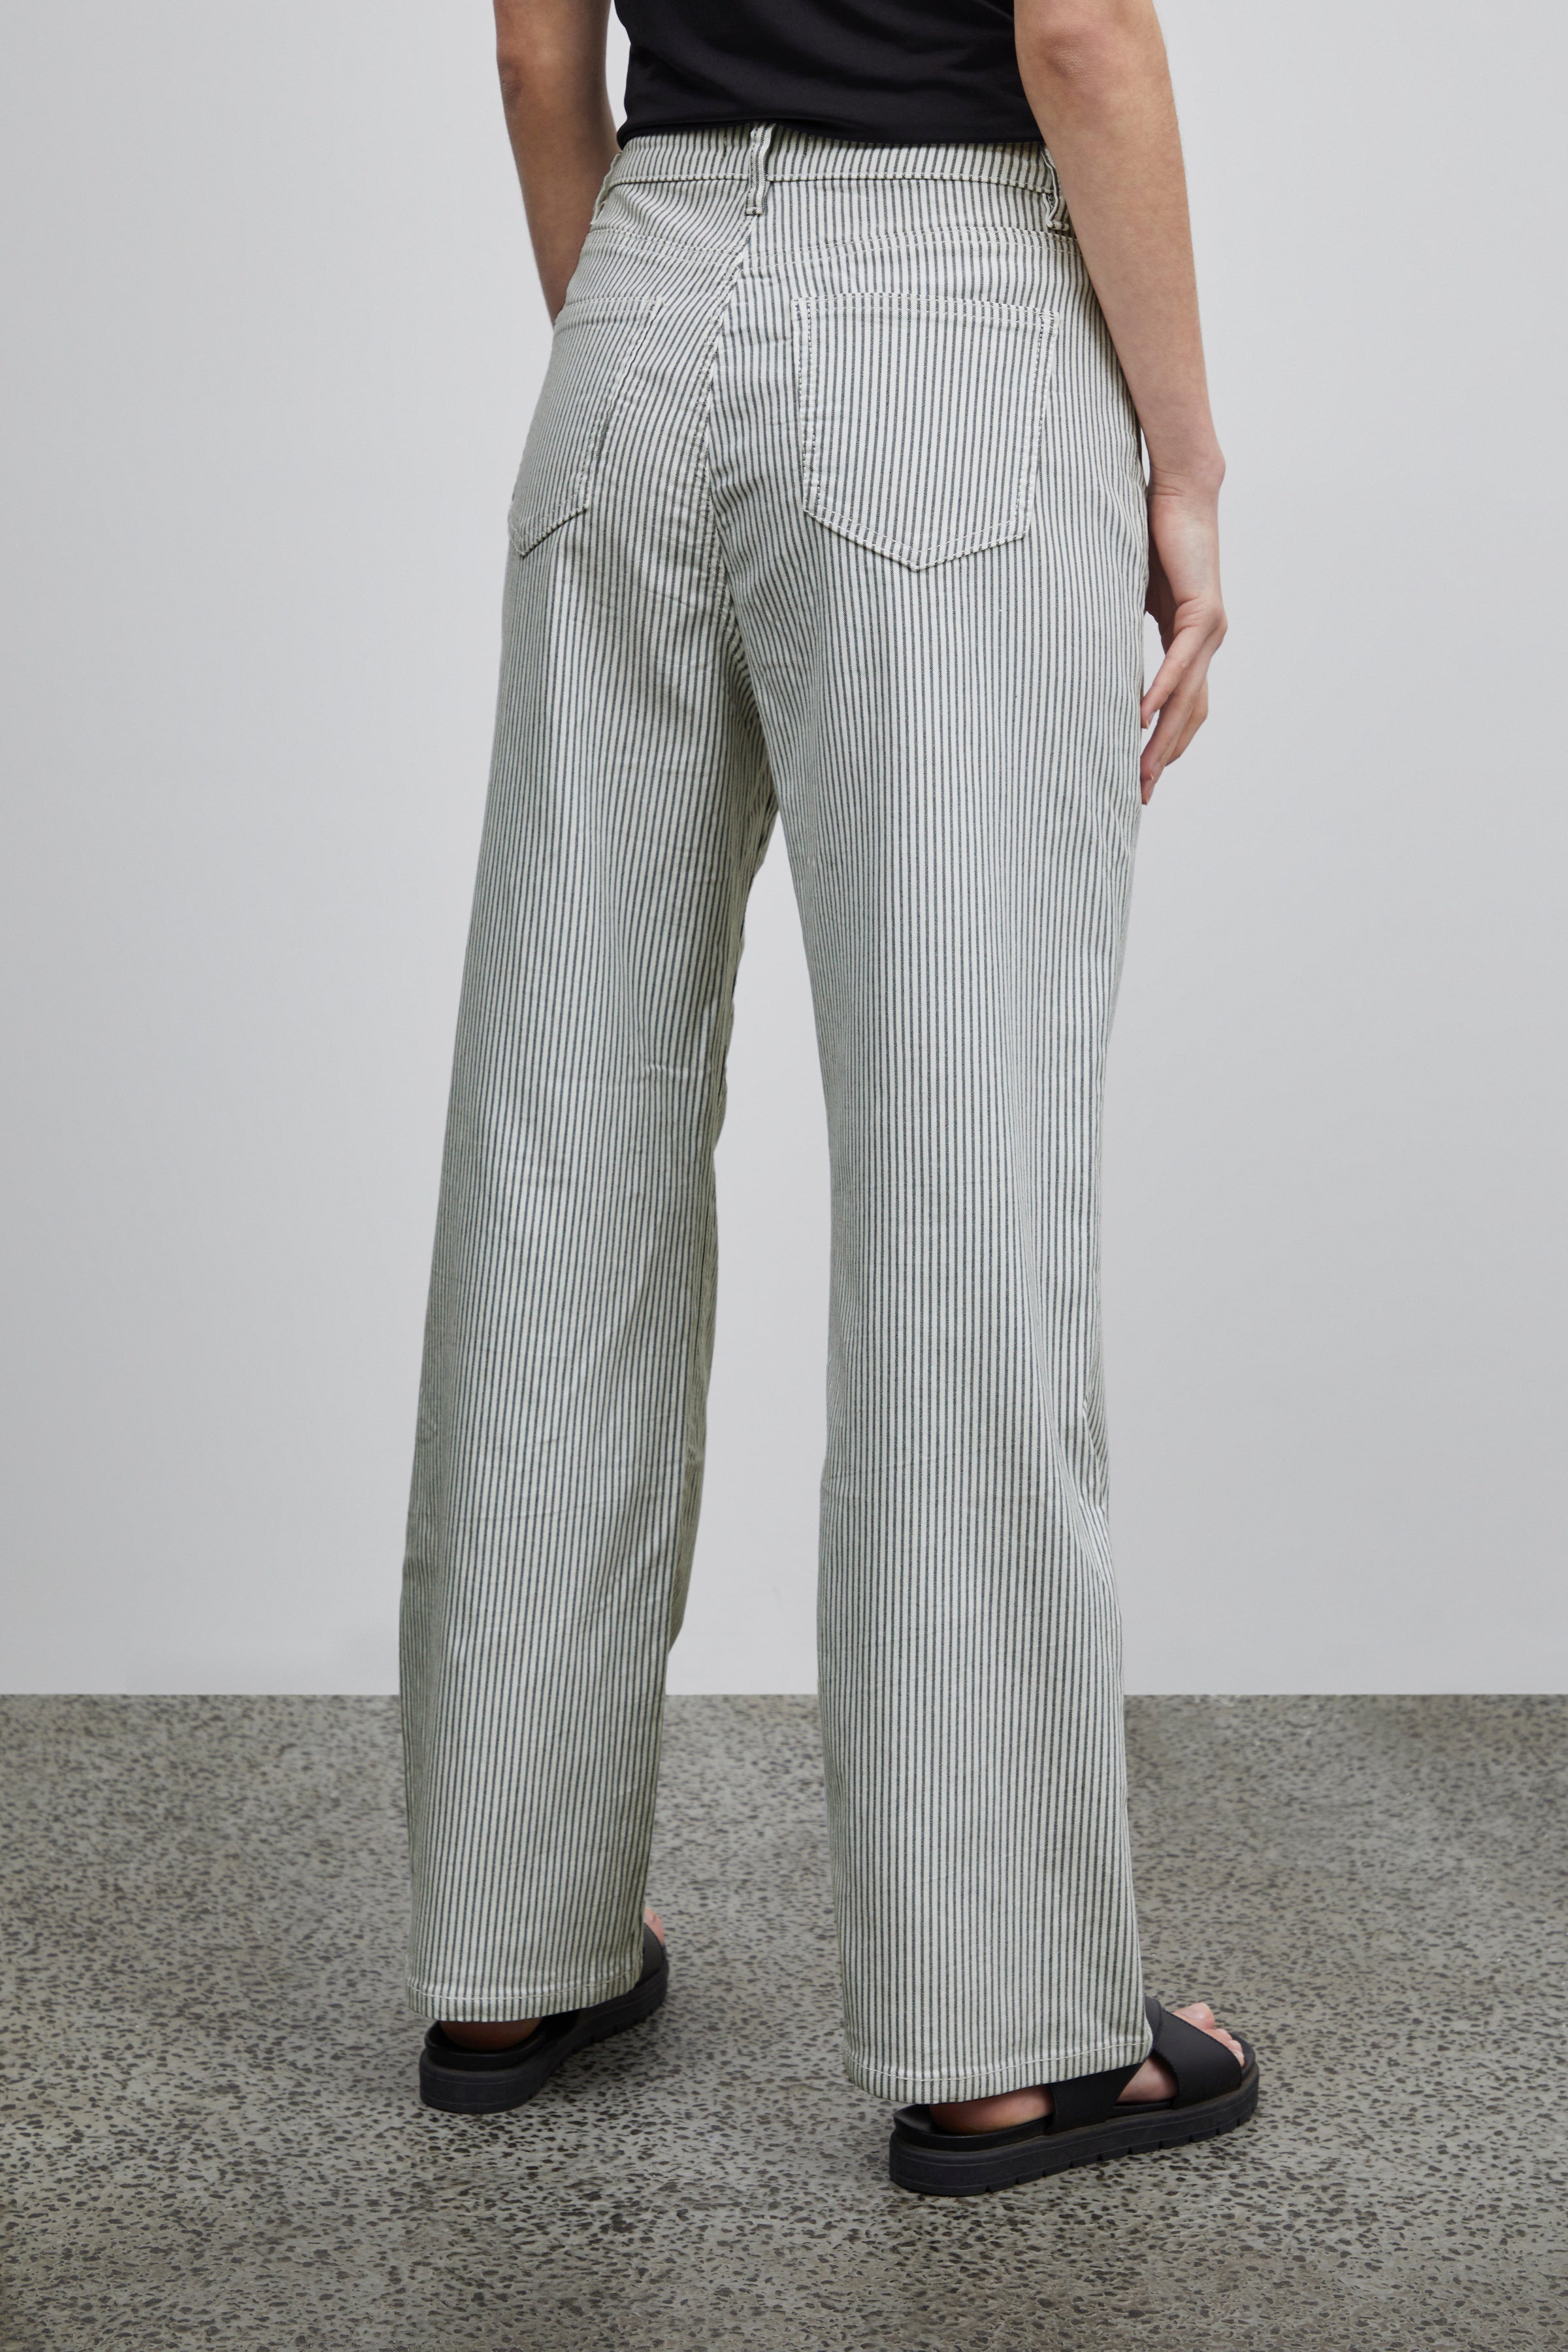 model bukser med striber fra Sorbet, bagfra